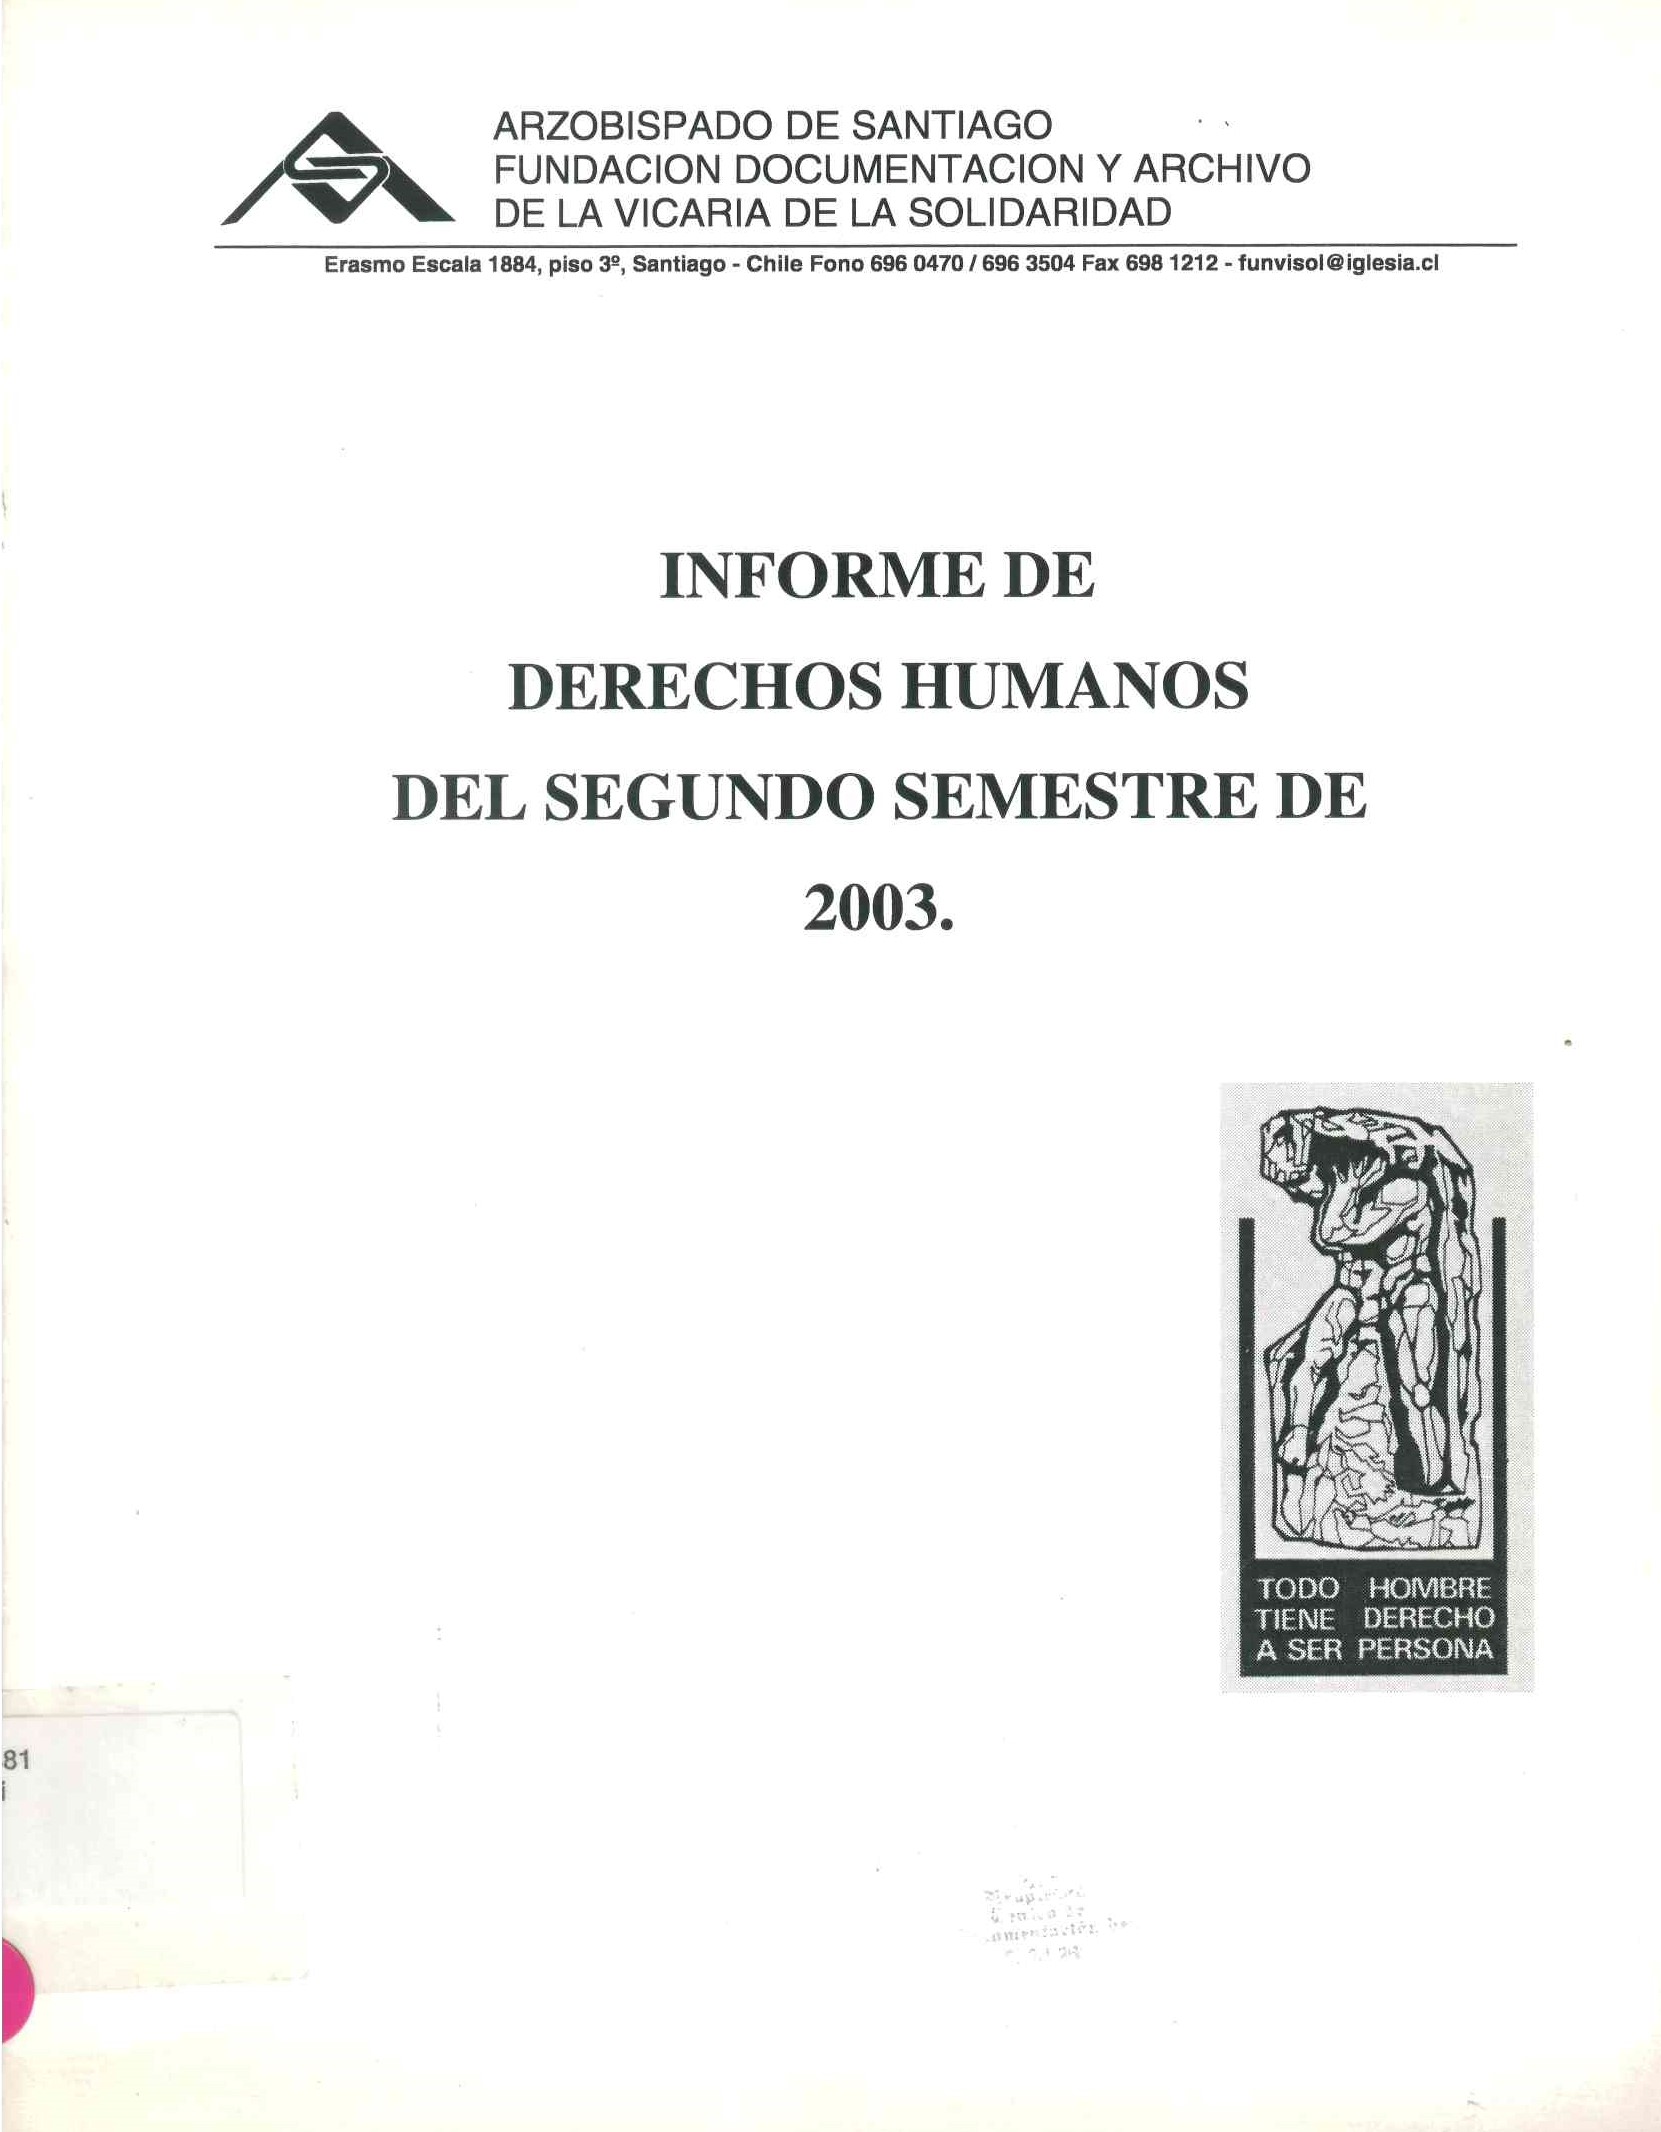 Informe de derechos humanos del segundo semestre 2003